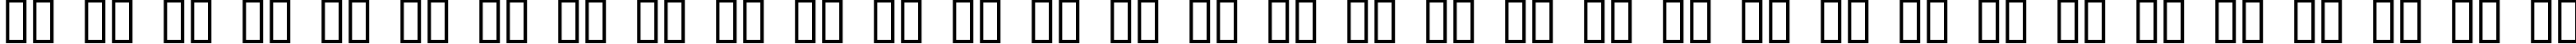 Пример написания русского алфавита шрифтом Digital Readout